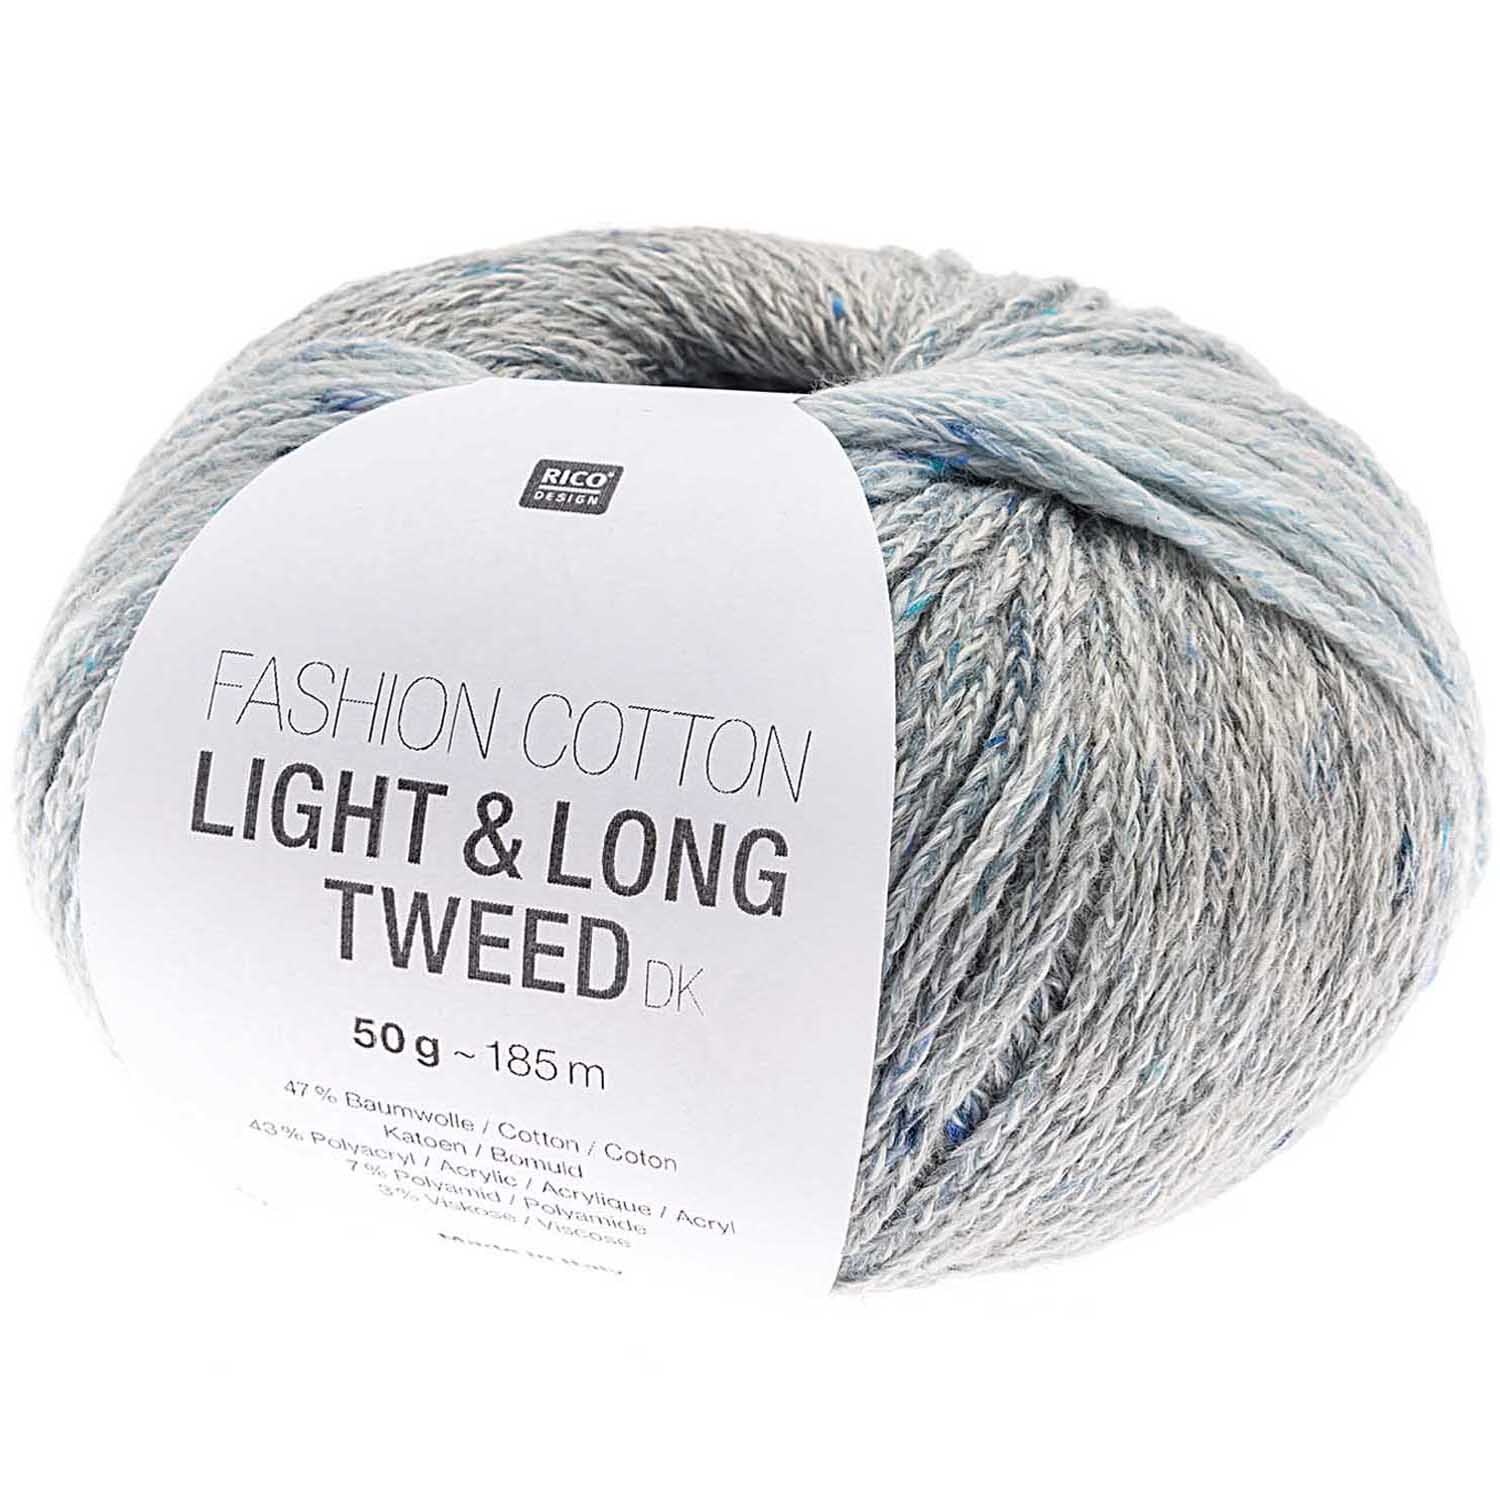 Fashion Cotton Light & Long Tweed dk